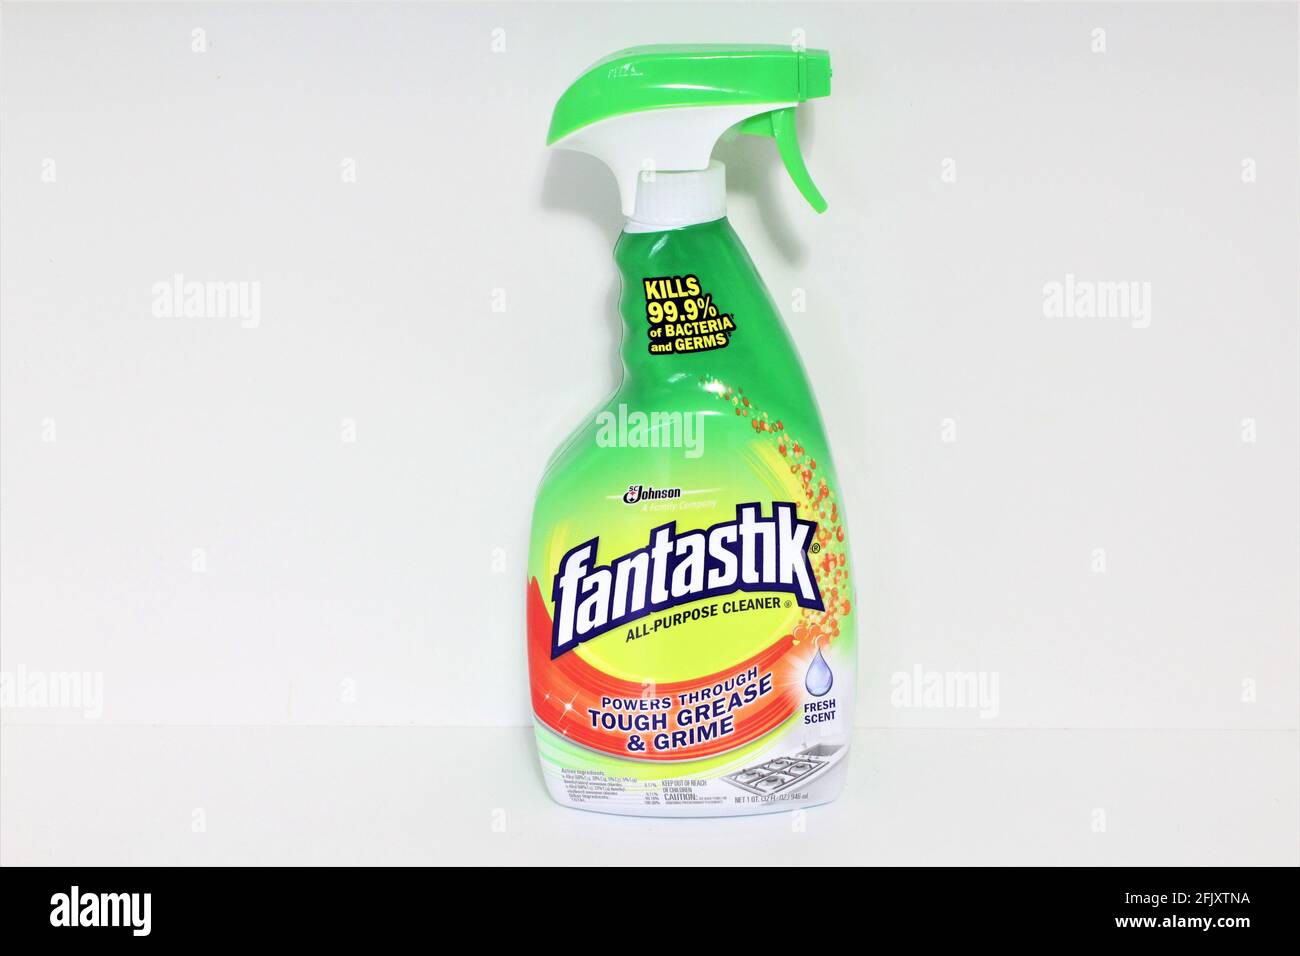 Bottiglia di grasso Fantastik e detergente per grime. Ottimo per uccidere batteri e germi in cucina. Prodotto realizzato dalla S. C. Johnson Company. Foto Stock